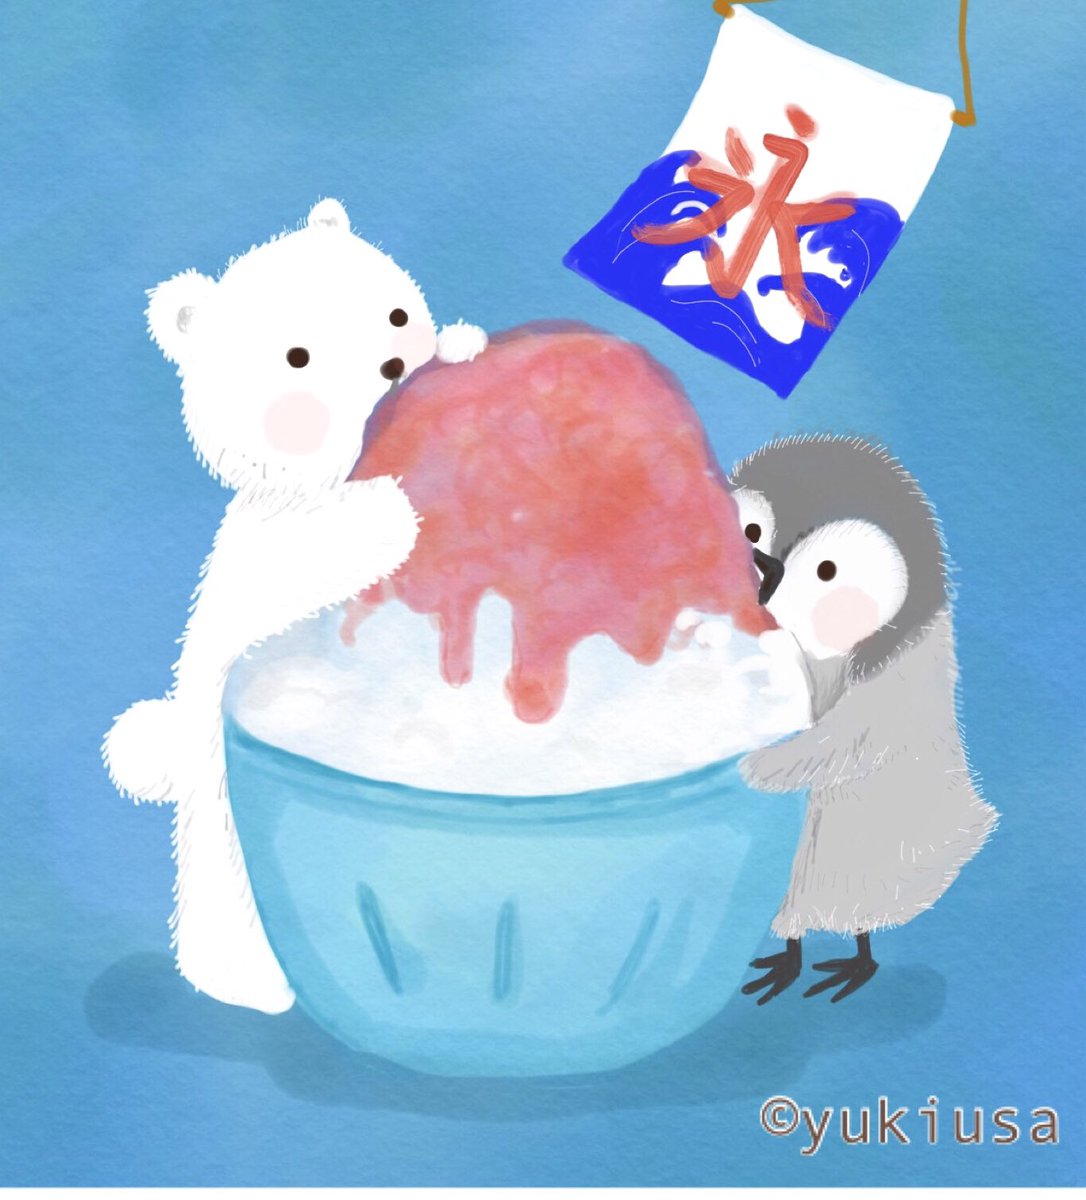 Twitter 上的 ゆきうさ イラスト えほん お客様 お待たせいたしました いちごかき氷です 暑いので 味見させてくれますか ʕ ᴥ ʔ イラスト かき氷 しろくま ペンギン Illustration Illustrator Penguin Polarbear T Co Rs5ufrhmoq Twitter